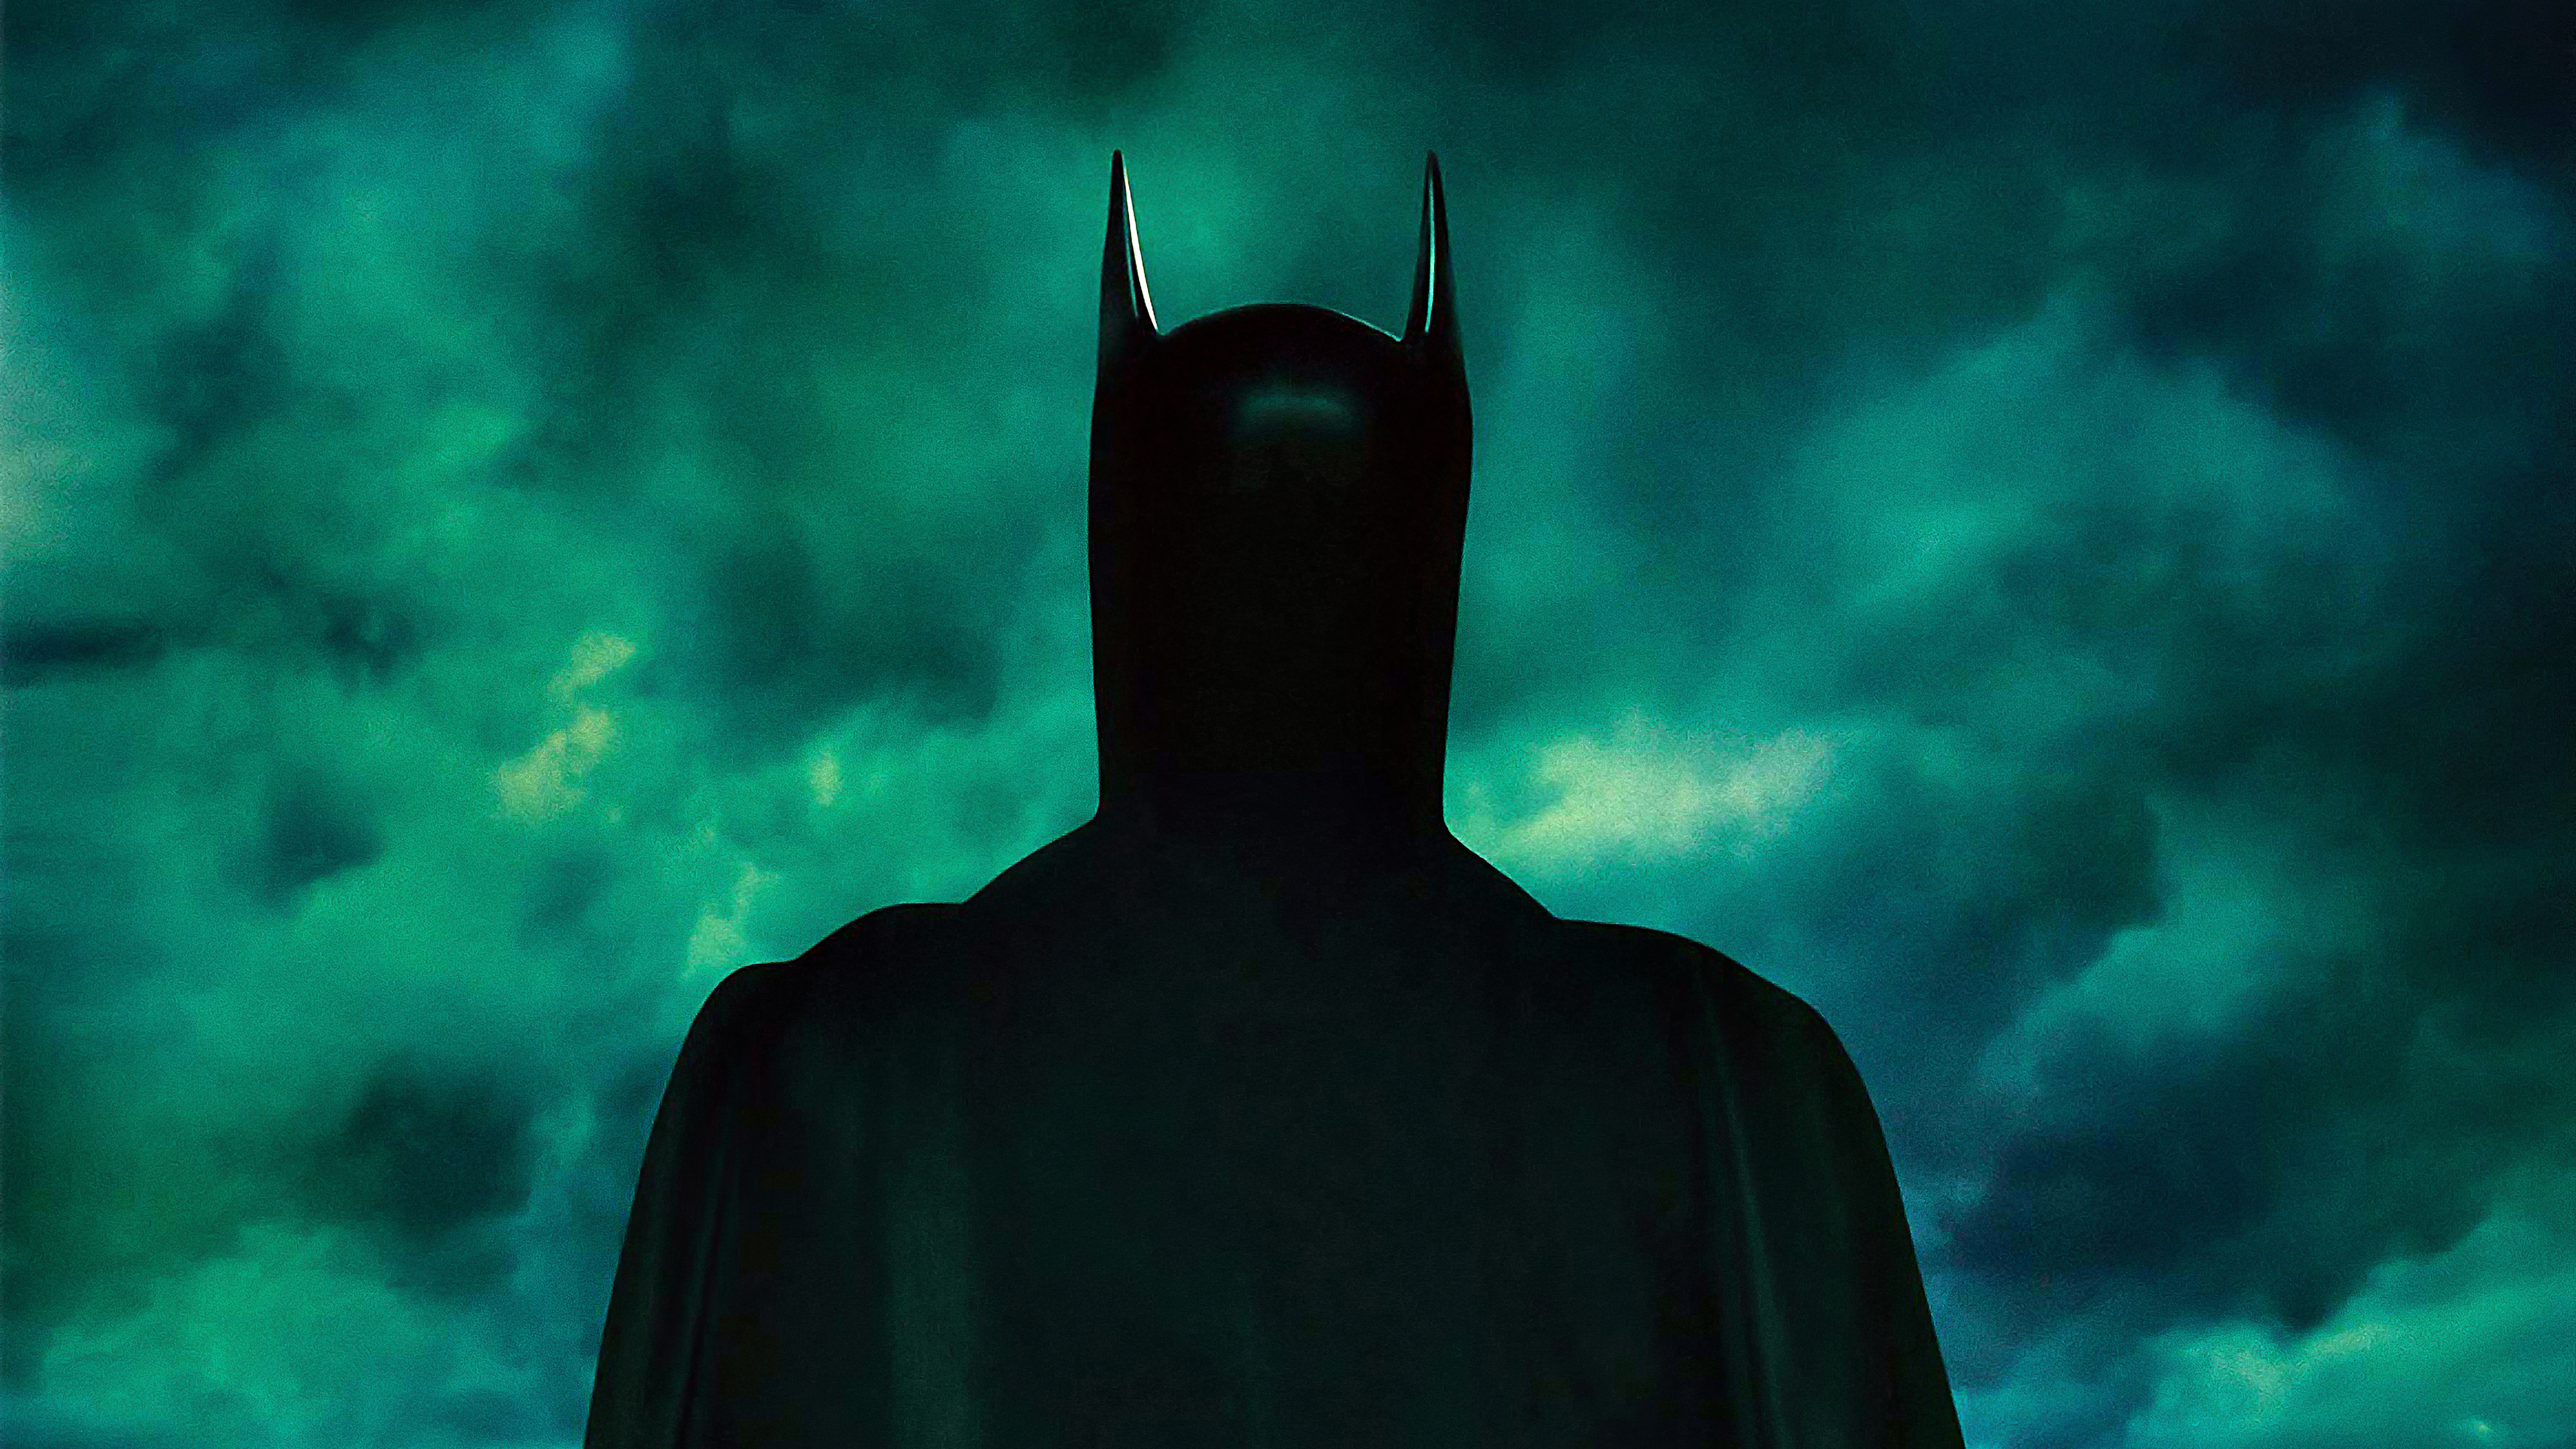 Фото Бэтмен, супергерои, фильмы, фильмы и сериалы - бесплатные картинки на Fonwall